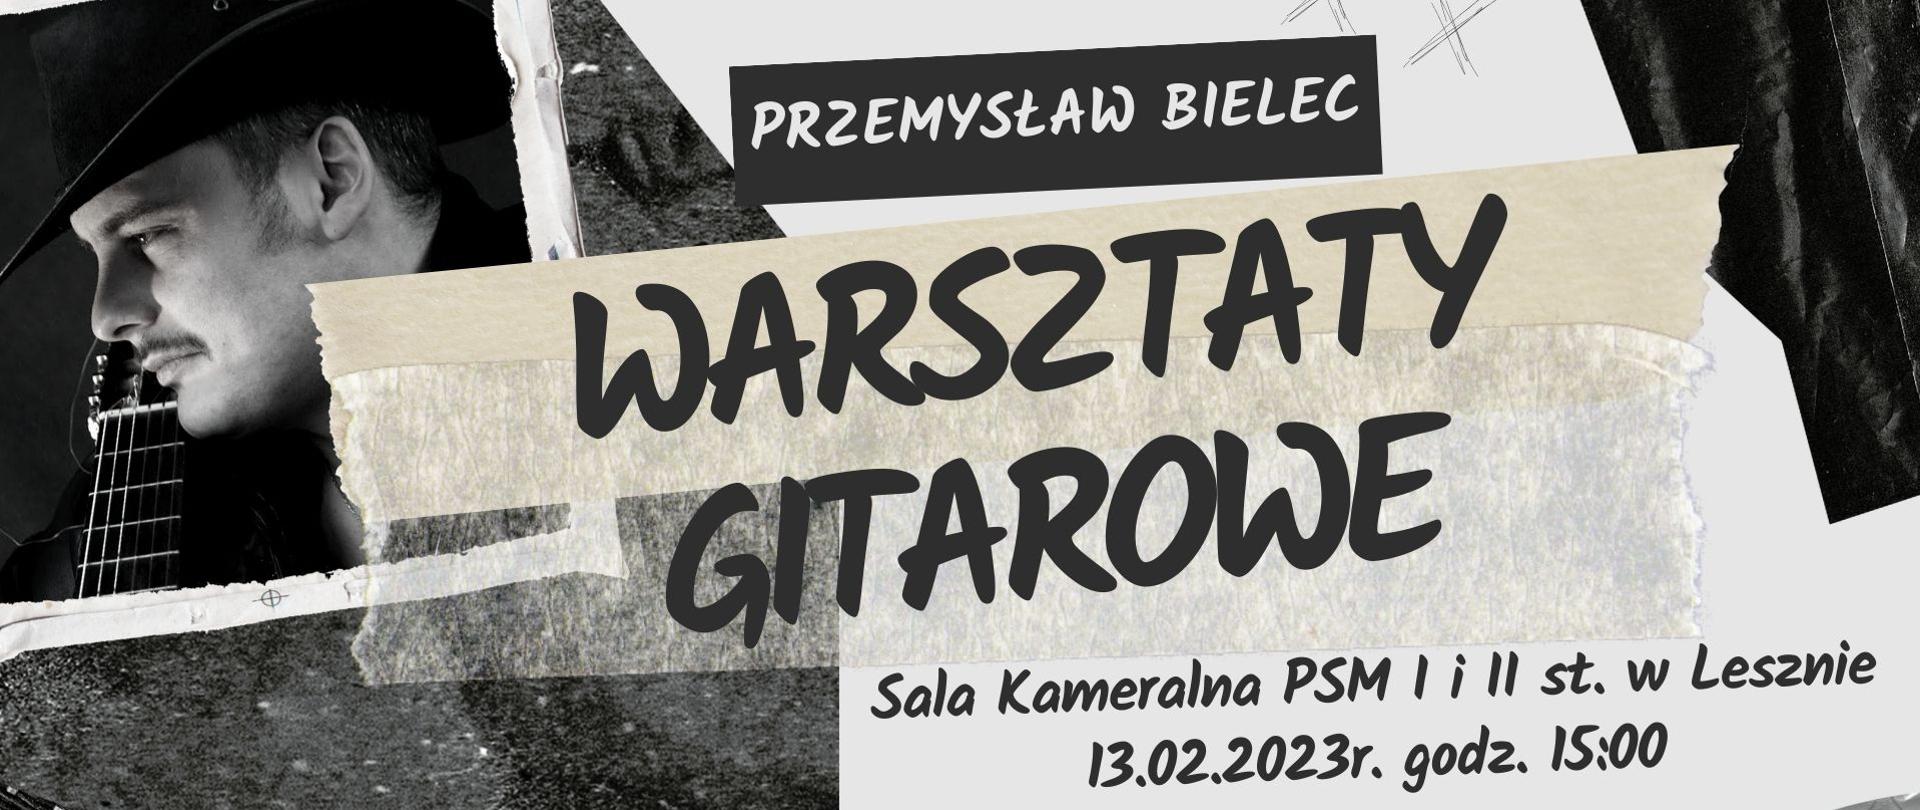 Plakat na czarno-białym tle o różnych strukturach, w lewym rogu zdjęcie Przemysława Bielca, napis Warsztaty gitarowe informacje o miejscu i dacie wydarzenia w kolorze ciemnoszarym.
